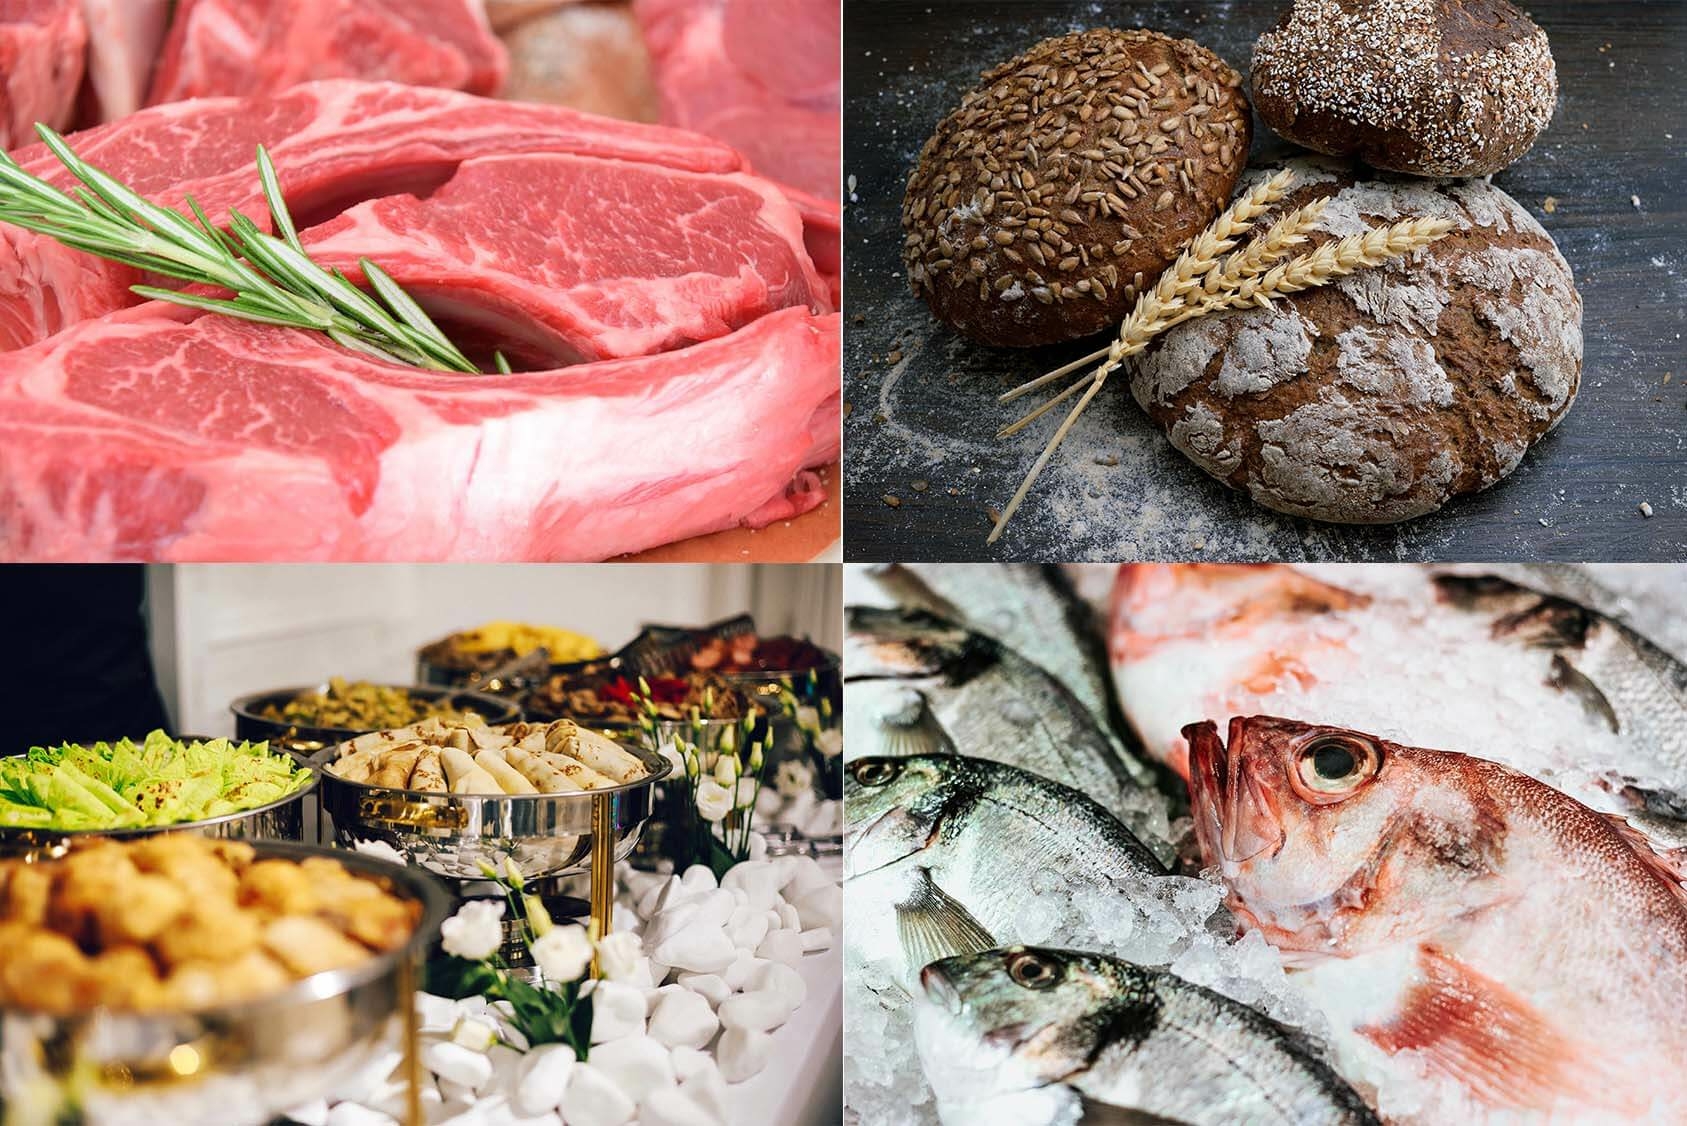 Транспортировка мяса, рыбы, морепродуктов и хлебобулочных изделий для оптовой торговли с обеспечением надежной холодильной цепи